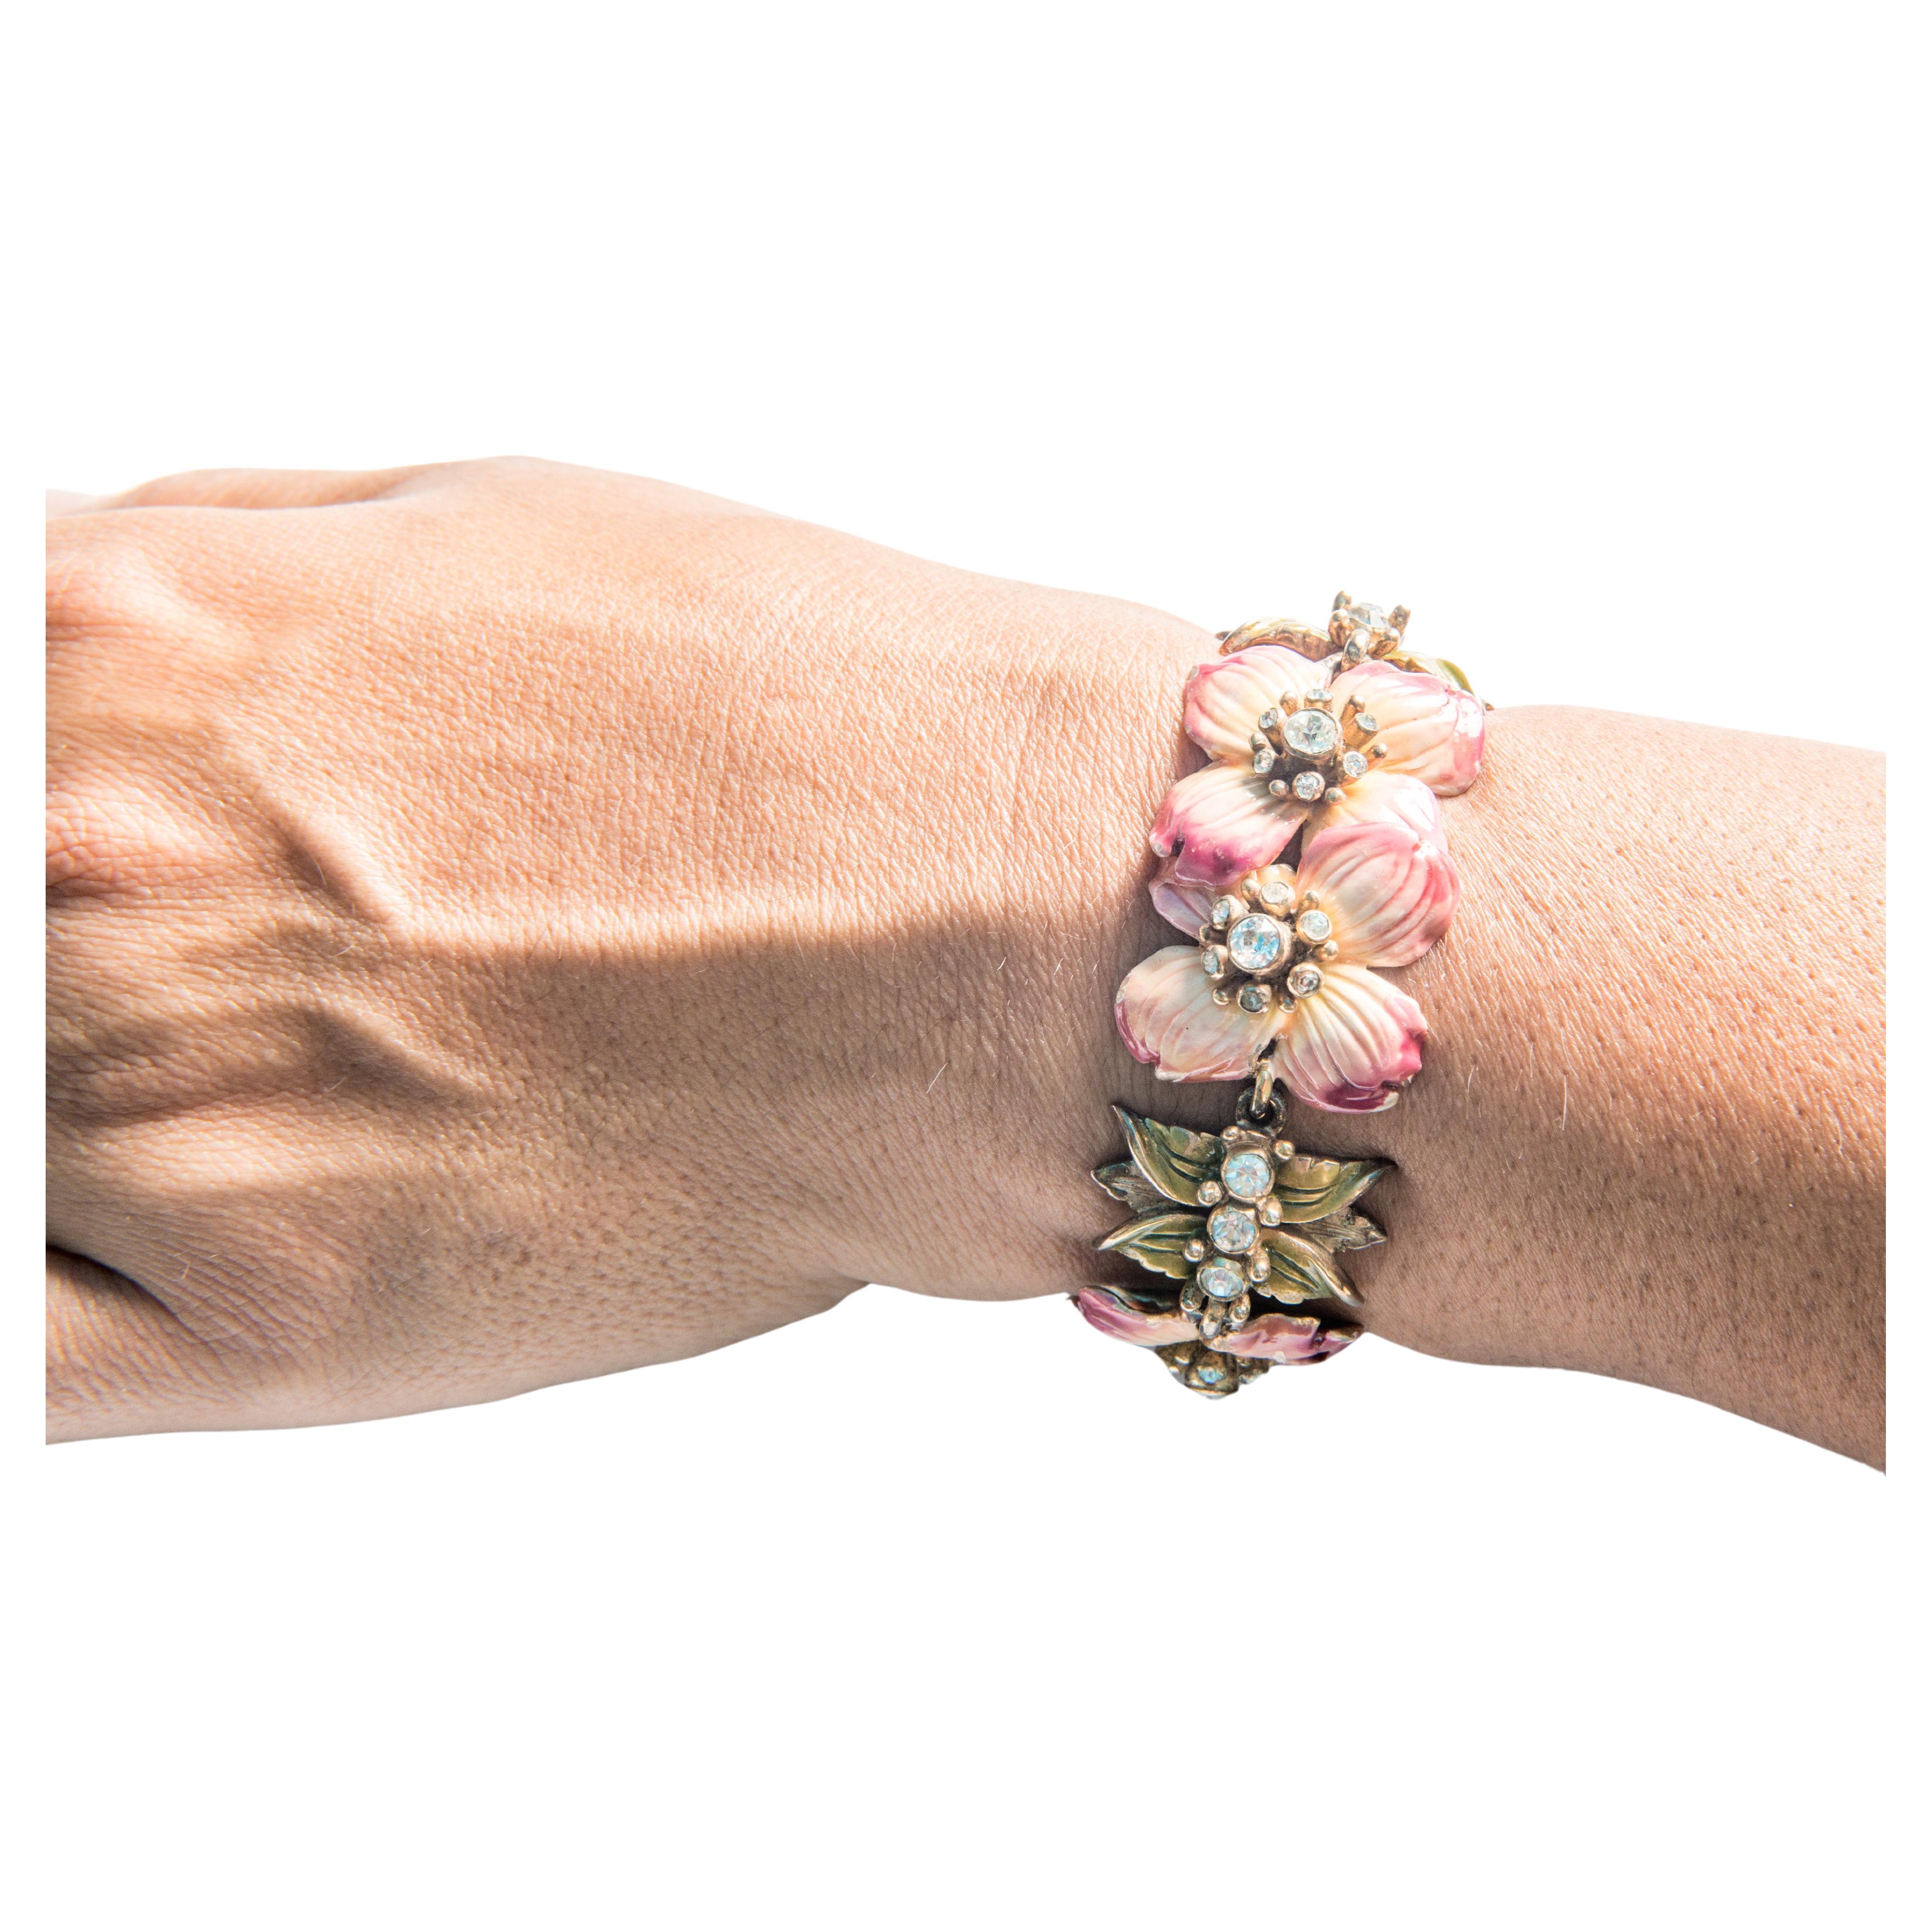 Vintage Enameled Pink Flower Bracelet